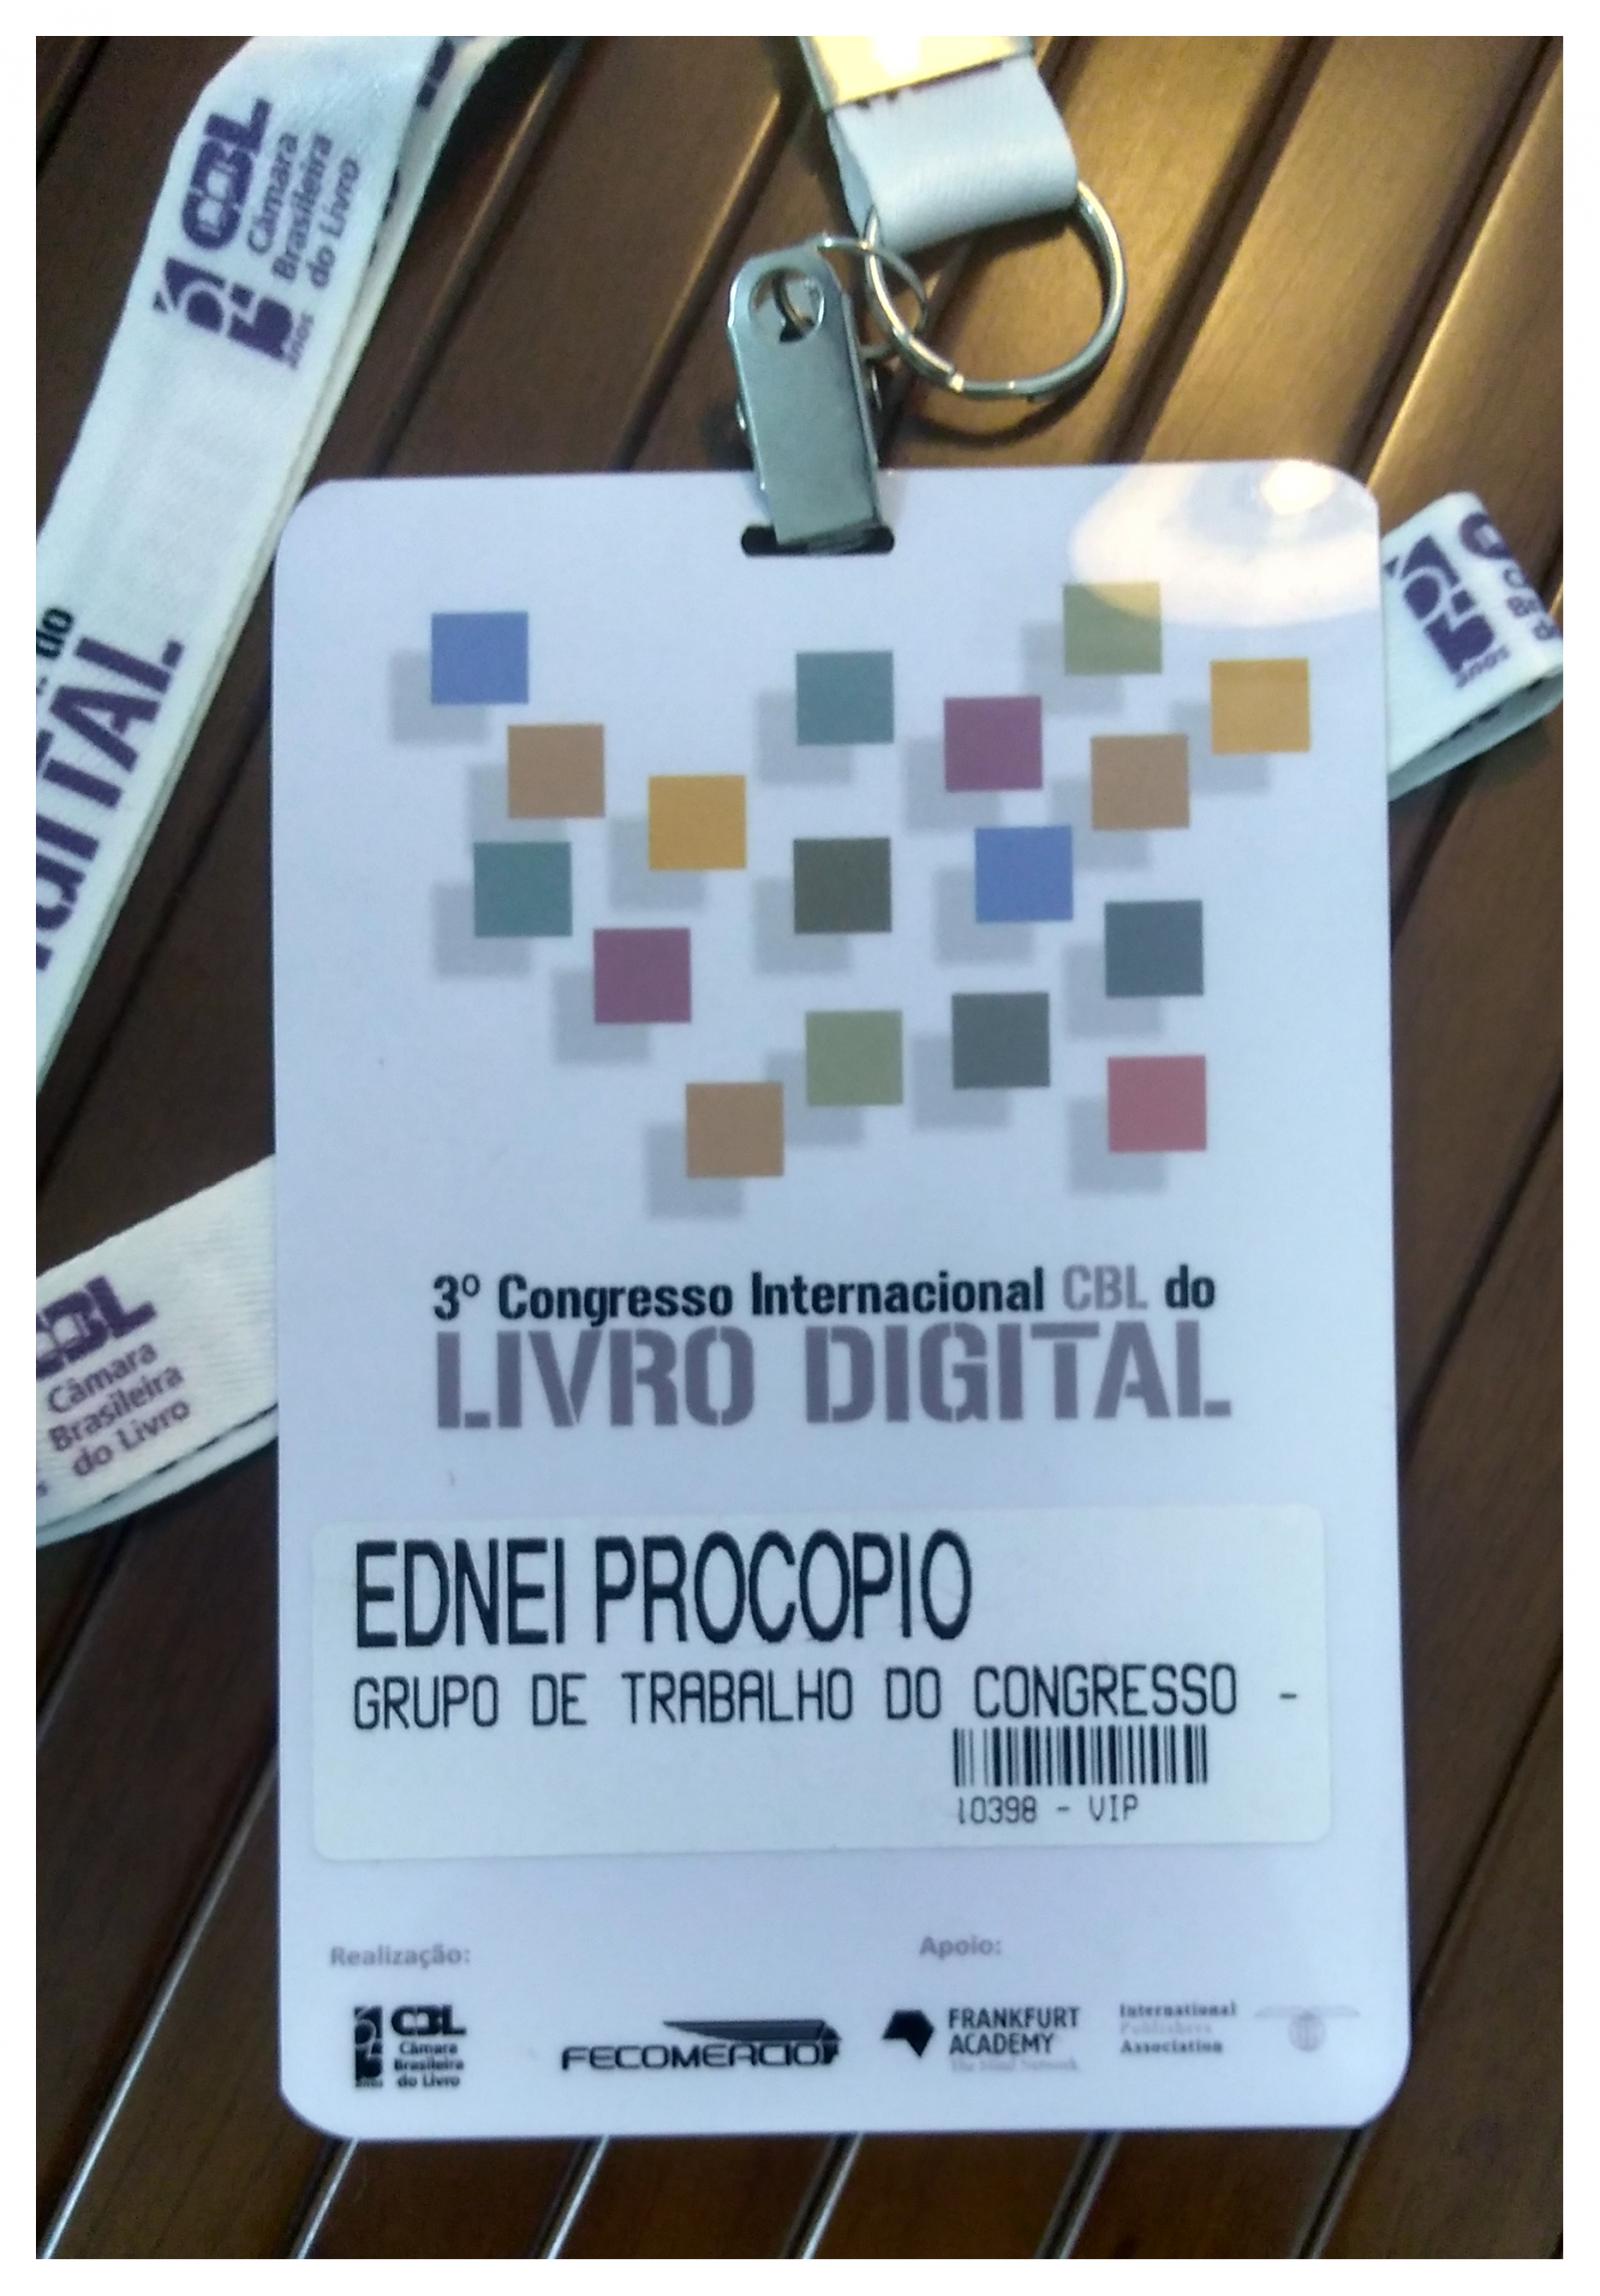 Credencial de participação de Ednei Procópio no 3° Congresso Internacional CBL do Livro Digital, promovido pela Câmara Brasileira do Livro (CBL), em 10 de Maio de 2012.